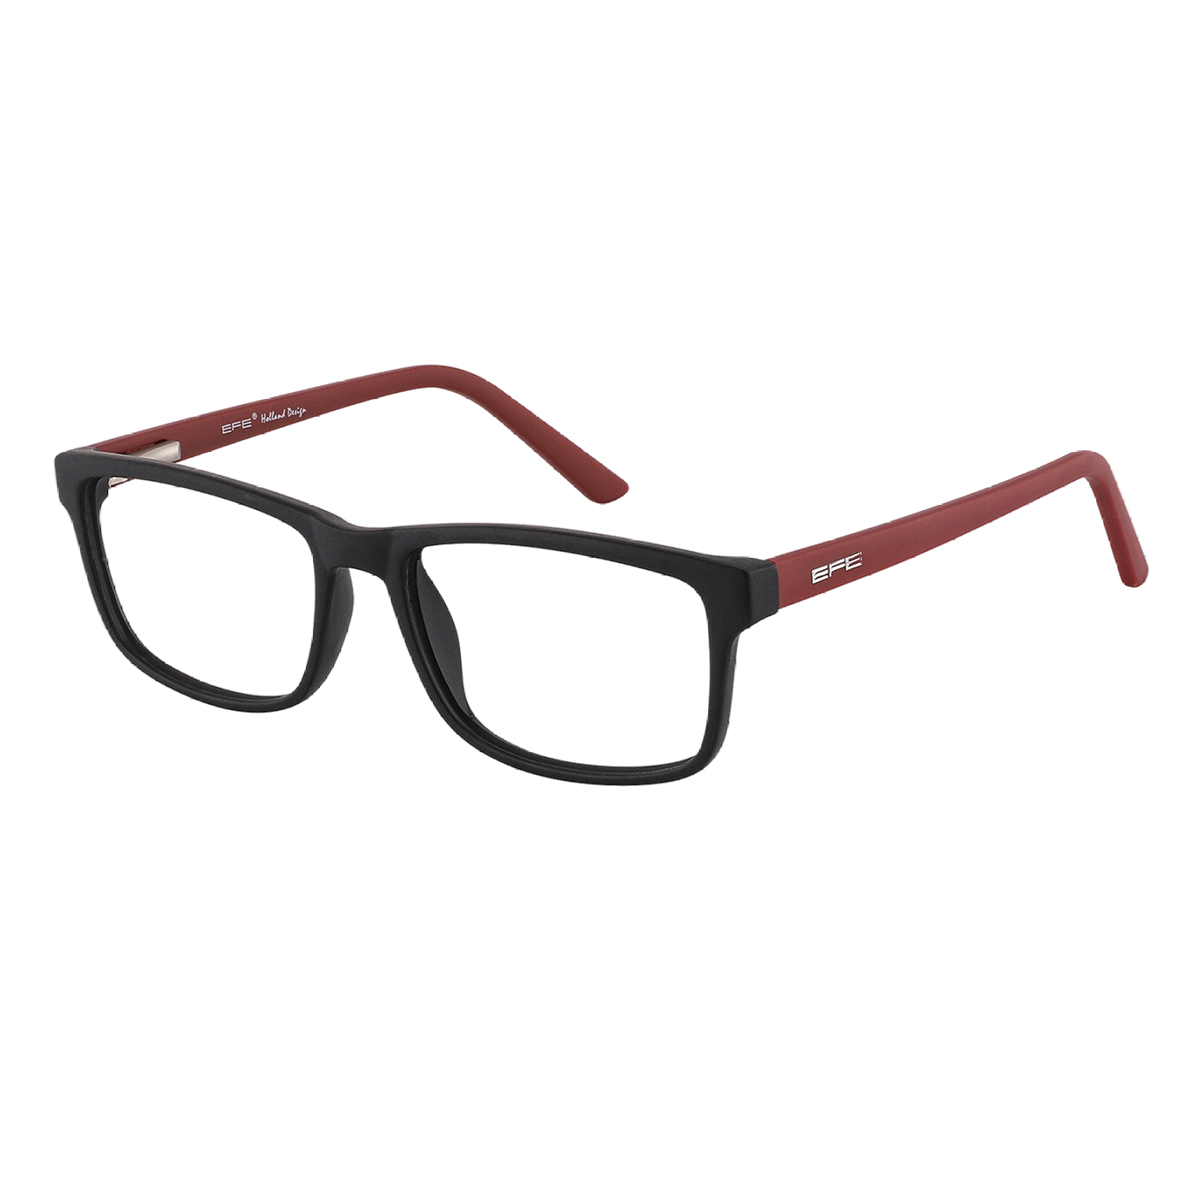 Burroughs - Rectangle Black-Red Glasses for Men & Women - EFE